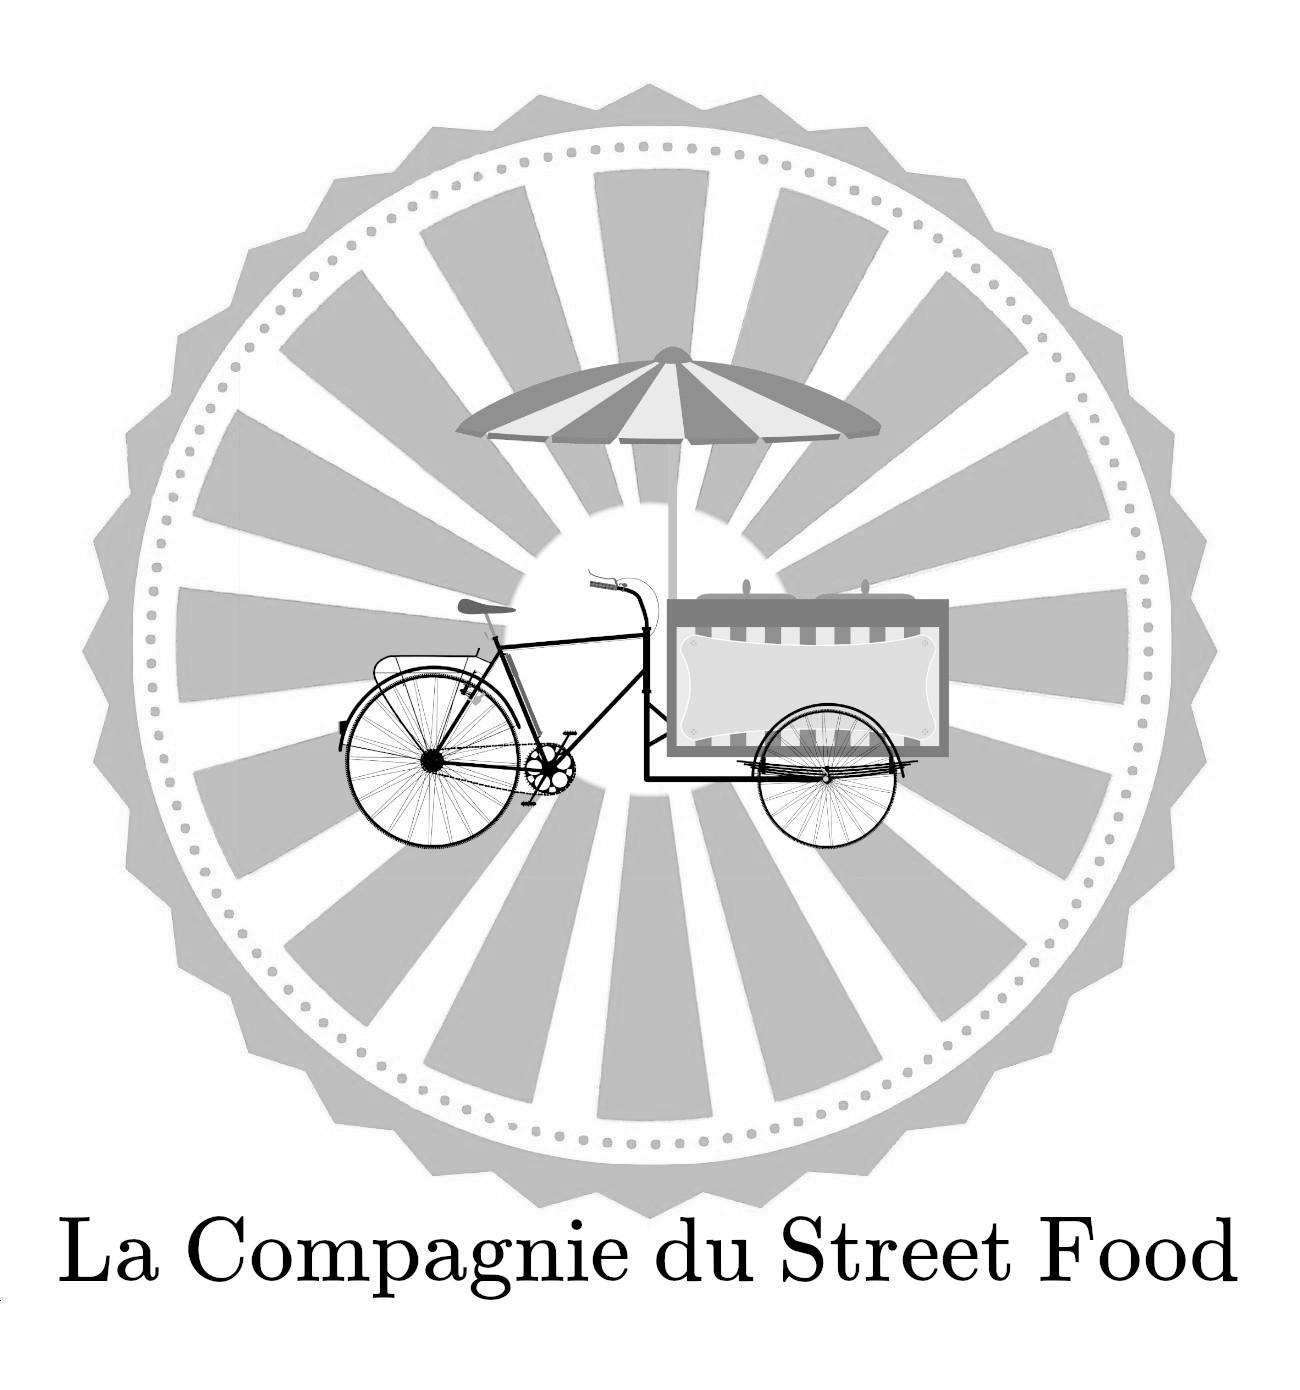 La Compagnie du Street Food – Fabricants de commerces ecologiques et autonomes